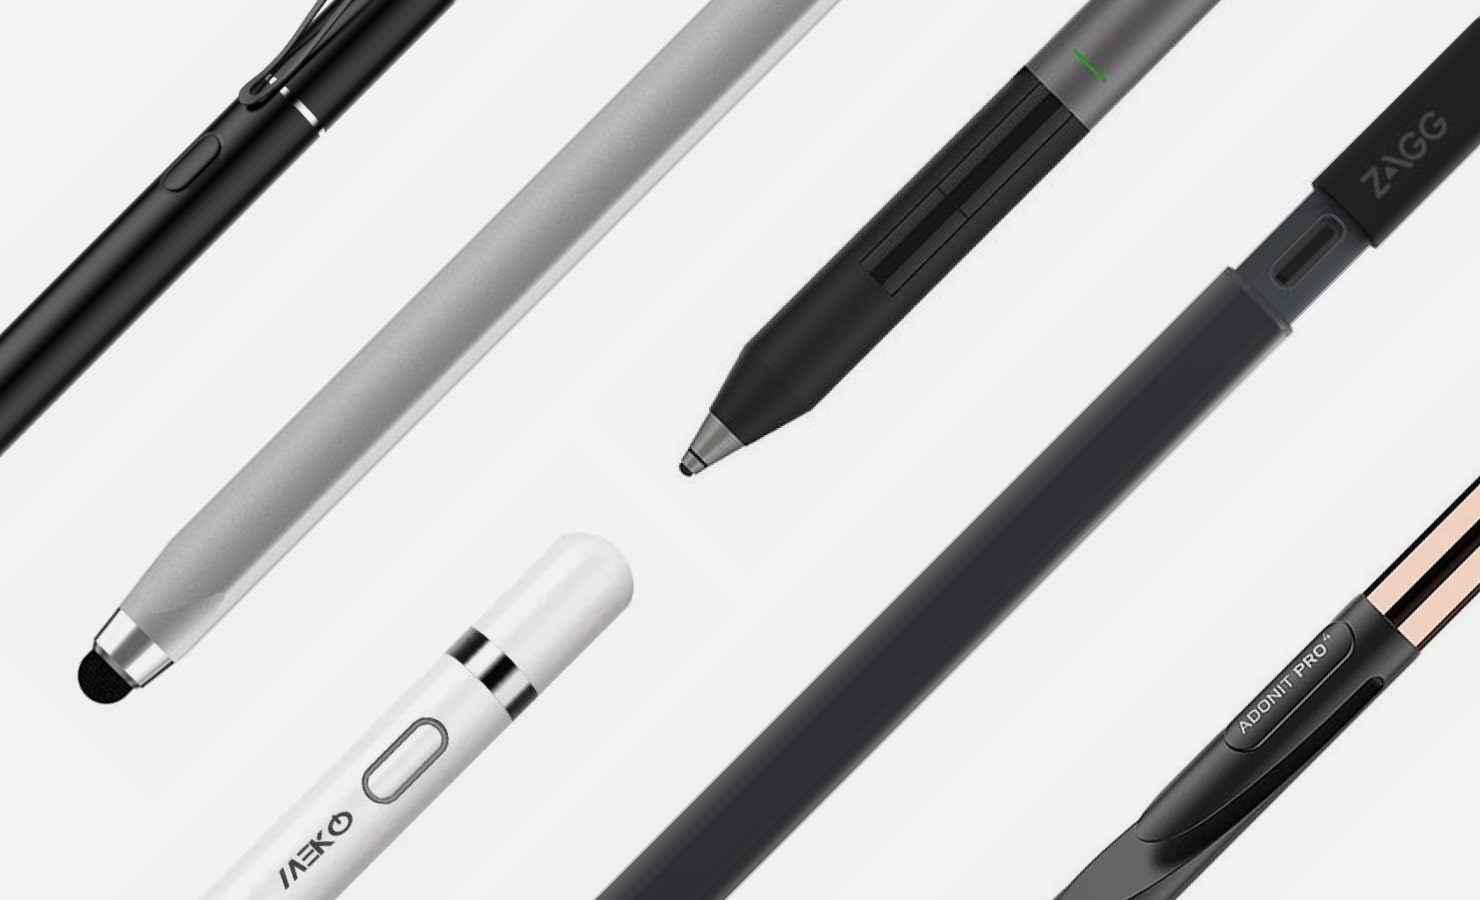 Apple Pencil Alternativo Smart Pencil Exclusivo Ipad GENERICO